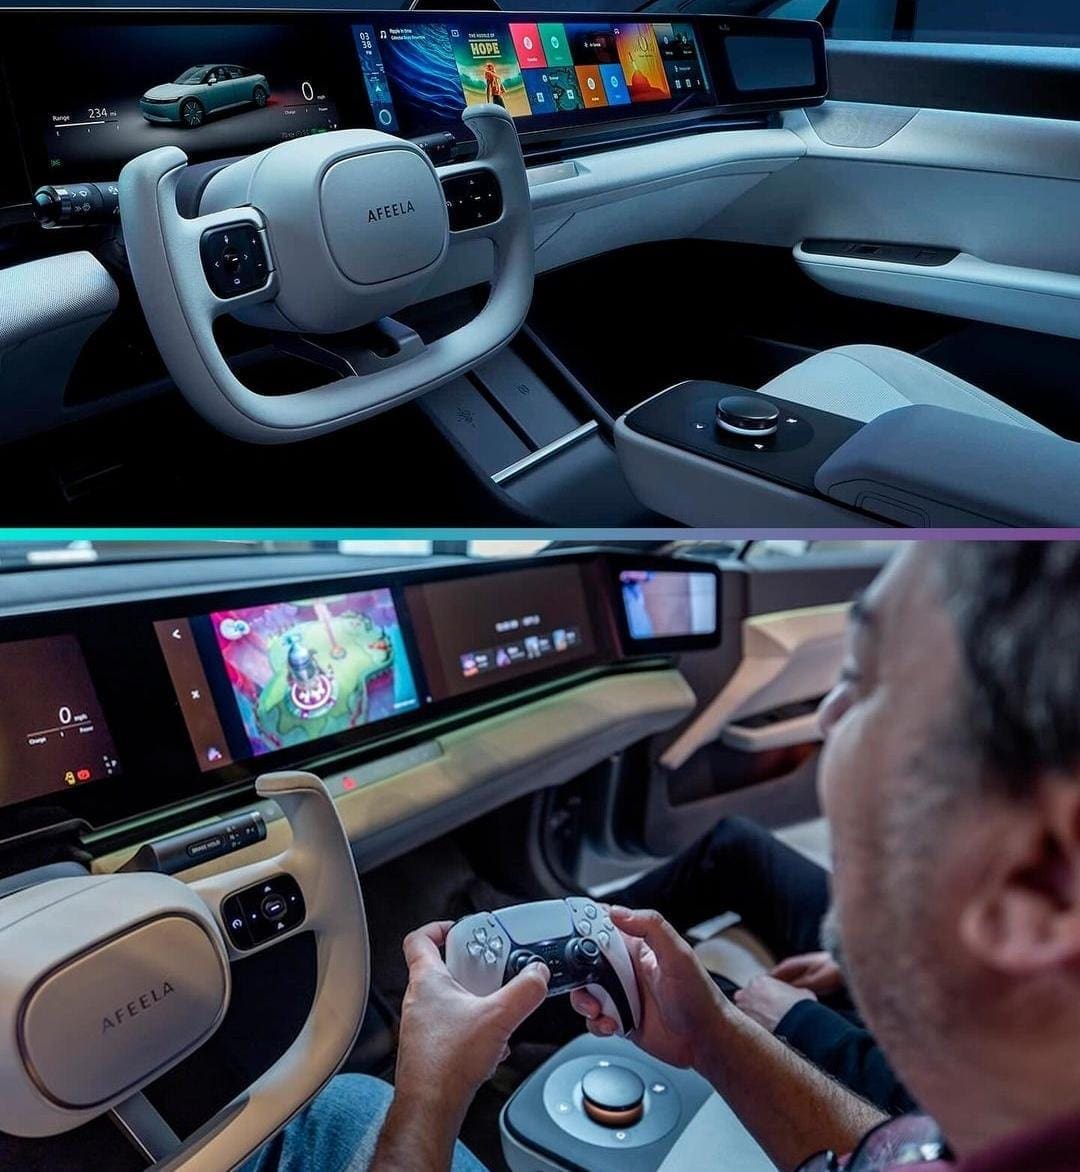 سيارة كهربائية يمكن التحكم بها عن طريق البلاي ستيشن أحدث إصدارات سوني اليابان ومايكروسوفت